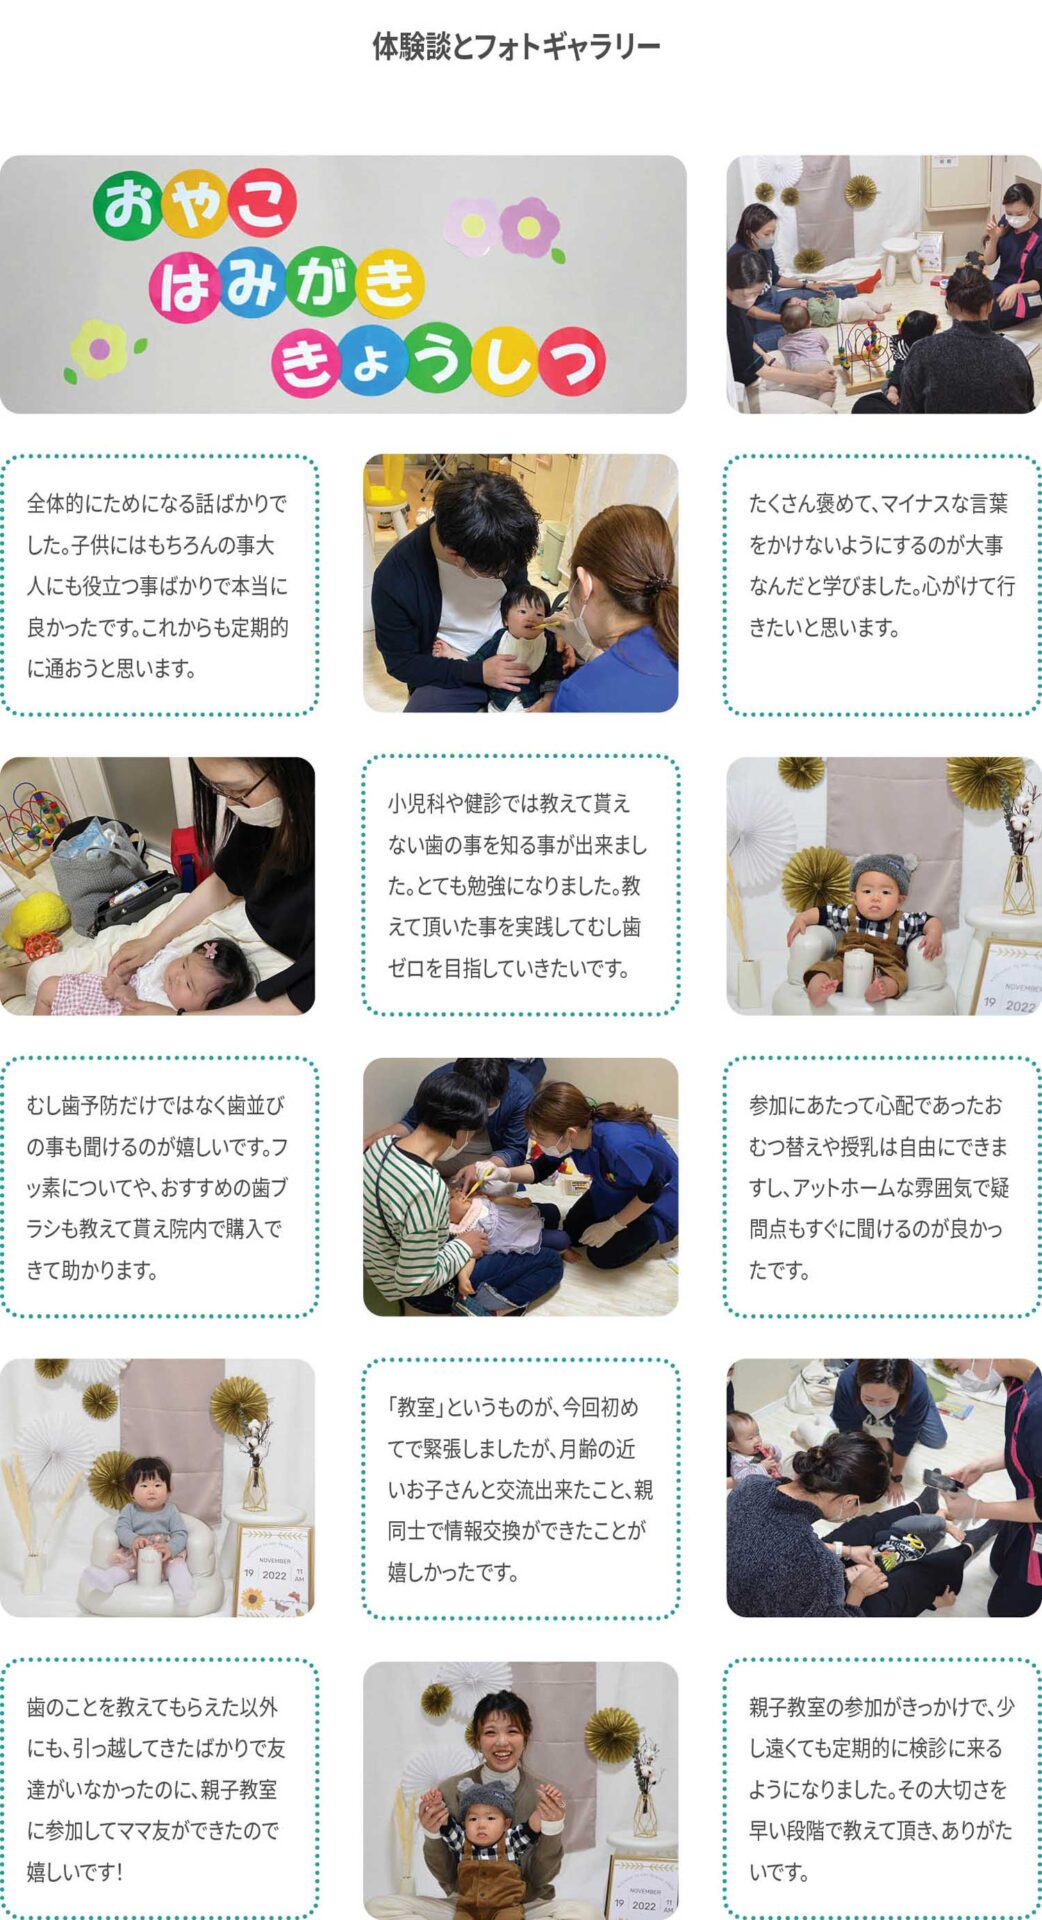 久米歯科医院の親子教室参加者の声と教室の風景写真